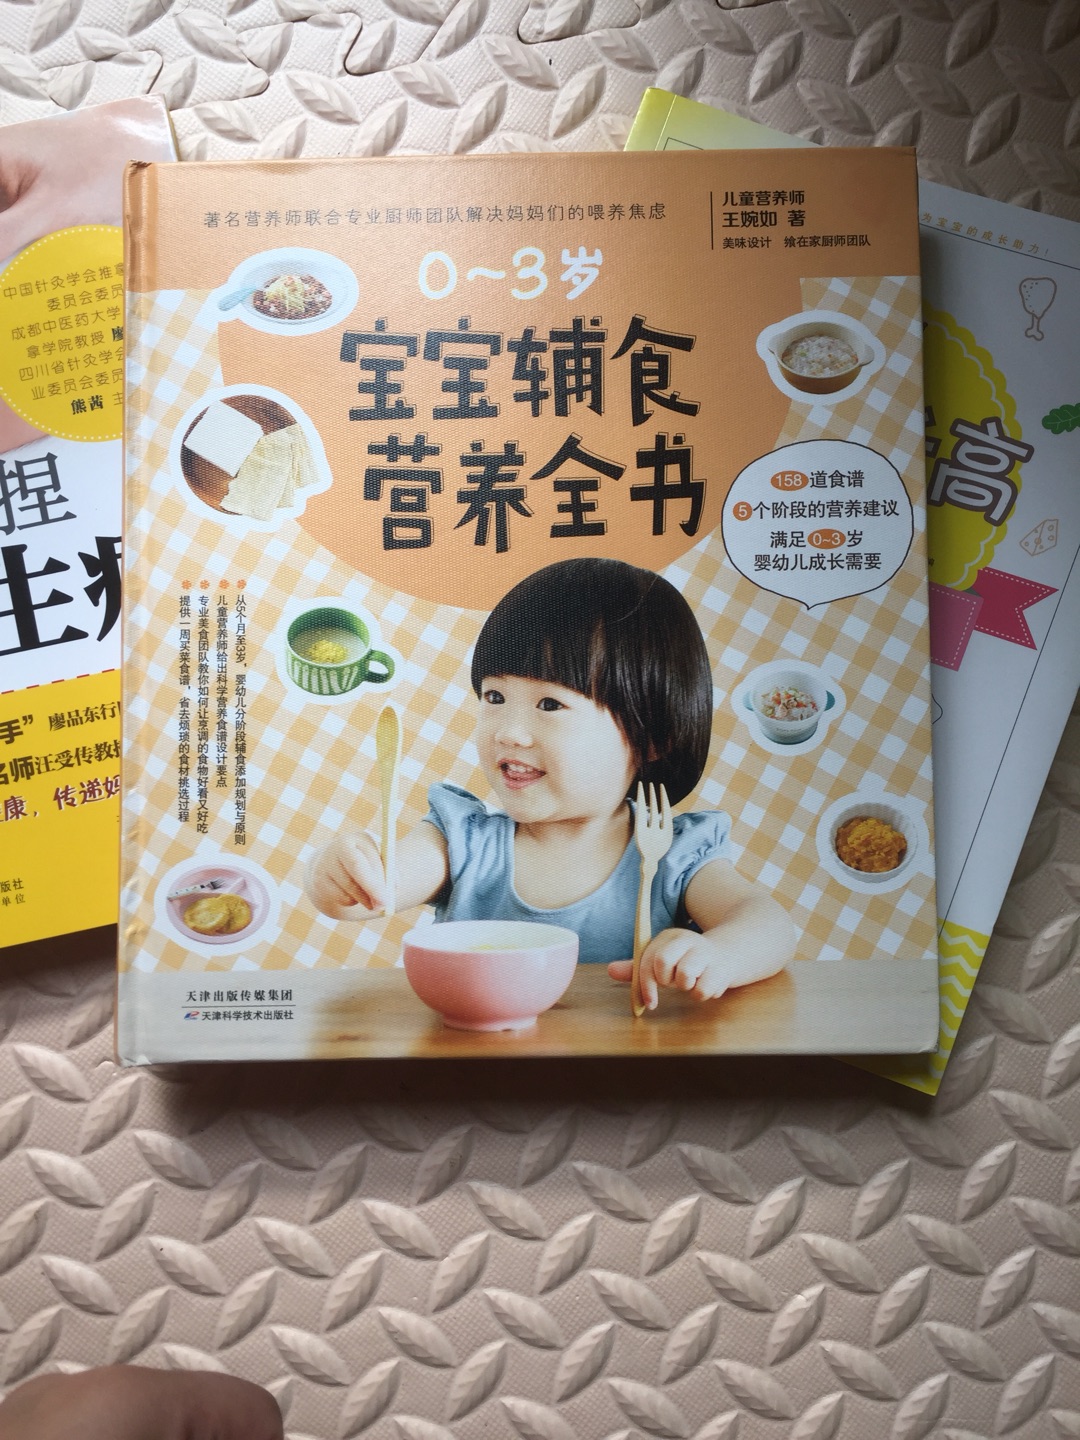 书非常好的、宝宝的饭就看这书、慢慢可以学起来吧！宝宝以后可以享受各种美食了、真是太好了！